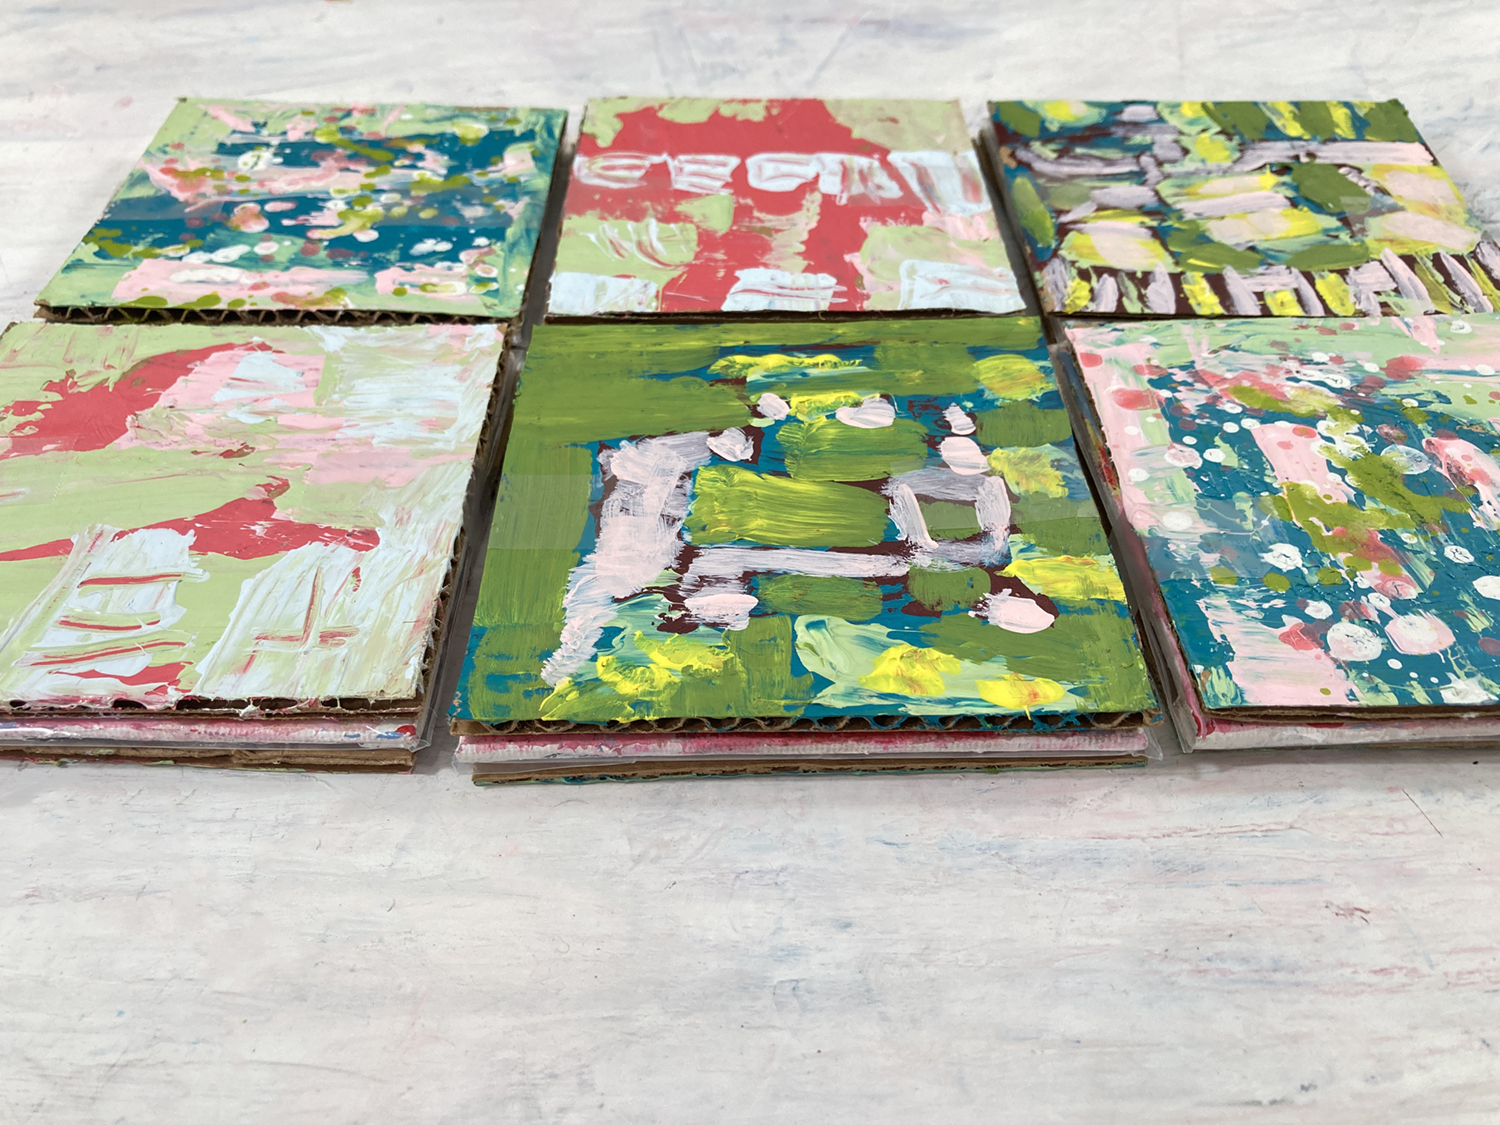 Katie Jeanne Wood - Packaging for paintings